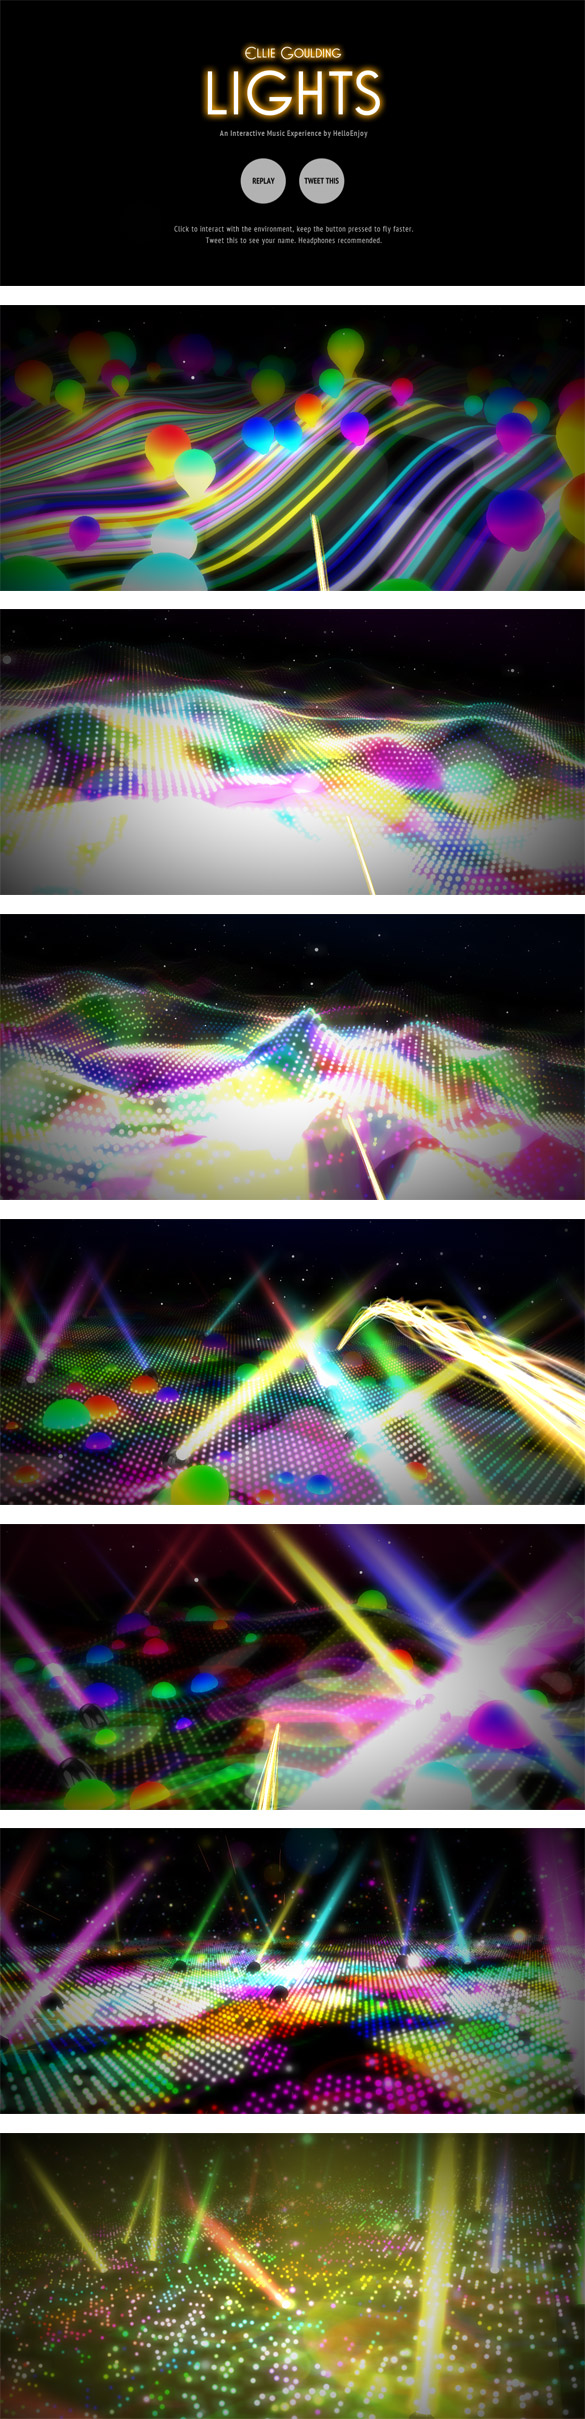 lights Lights, de Ellie Goulding, une expérience musicale & interactive utilisant webGL !